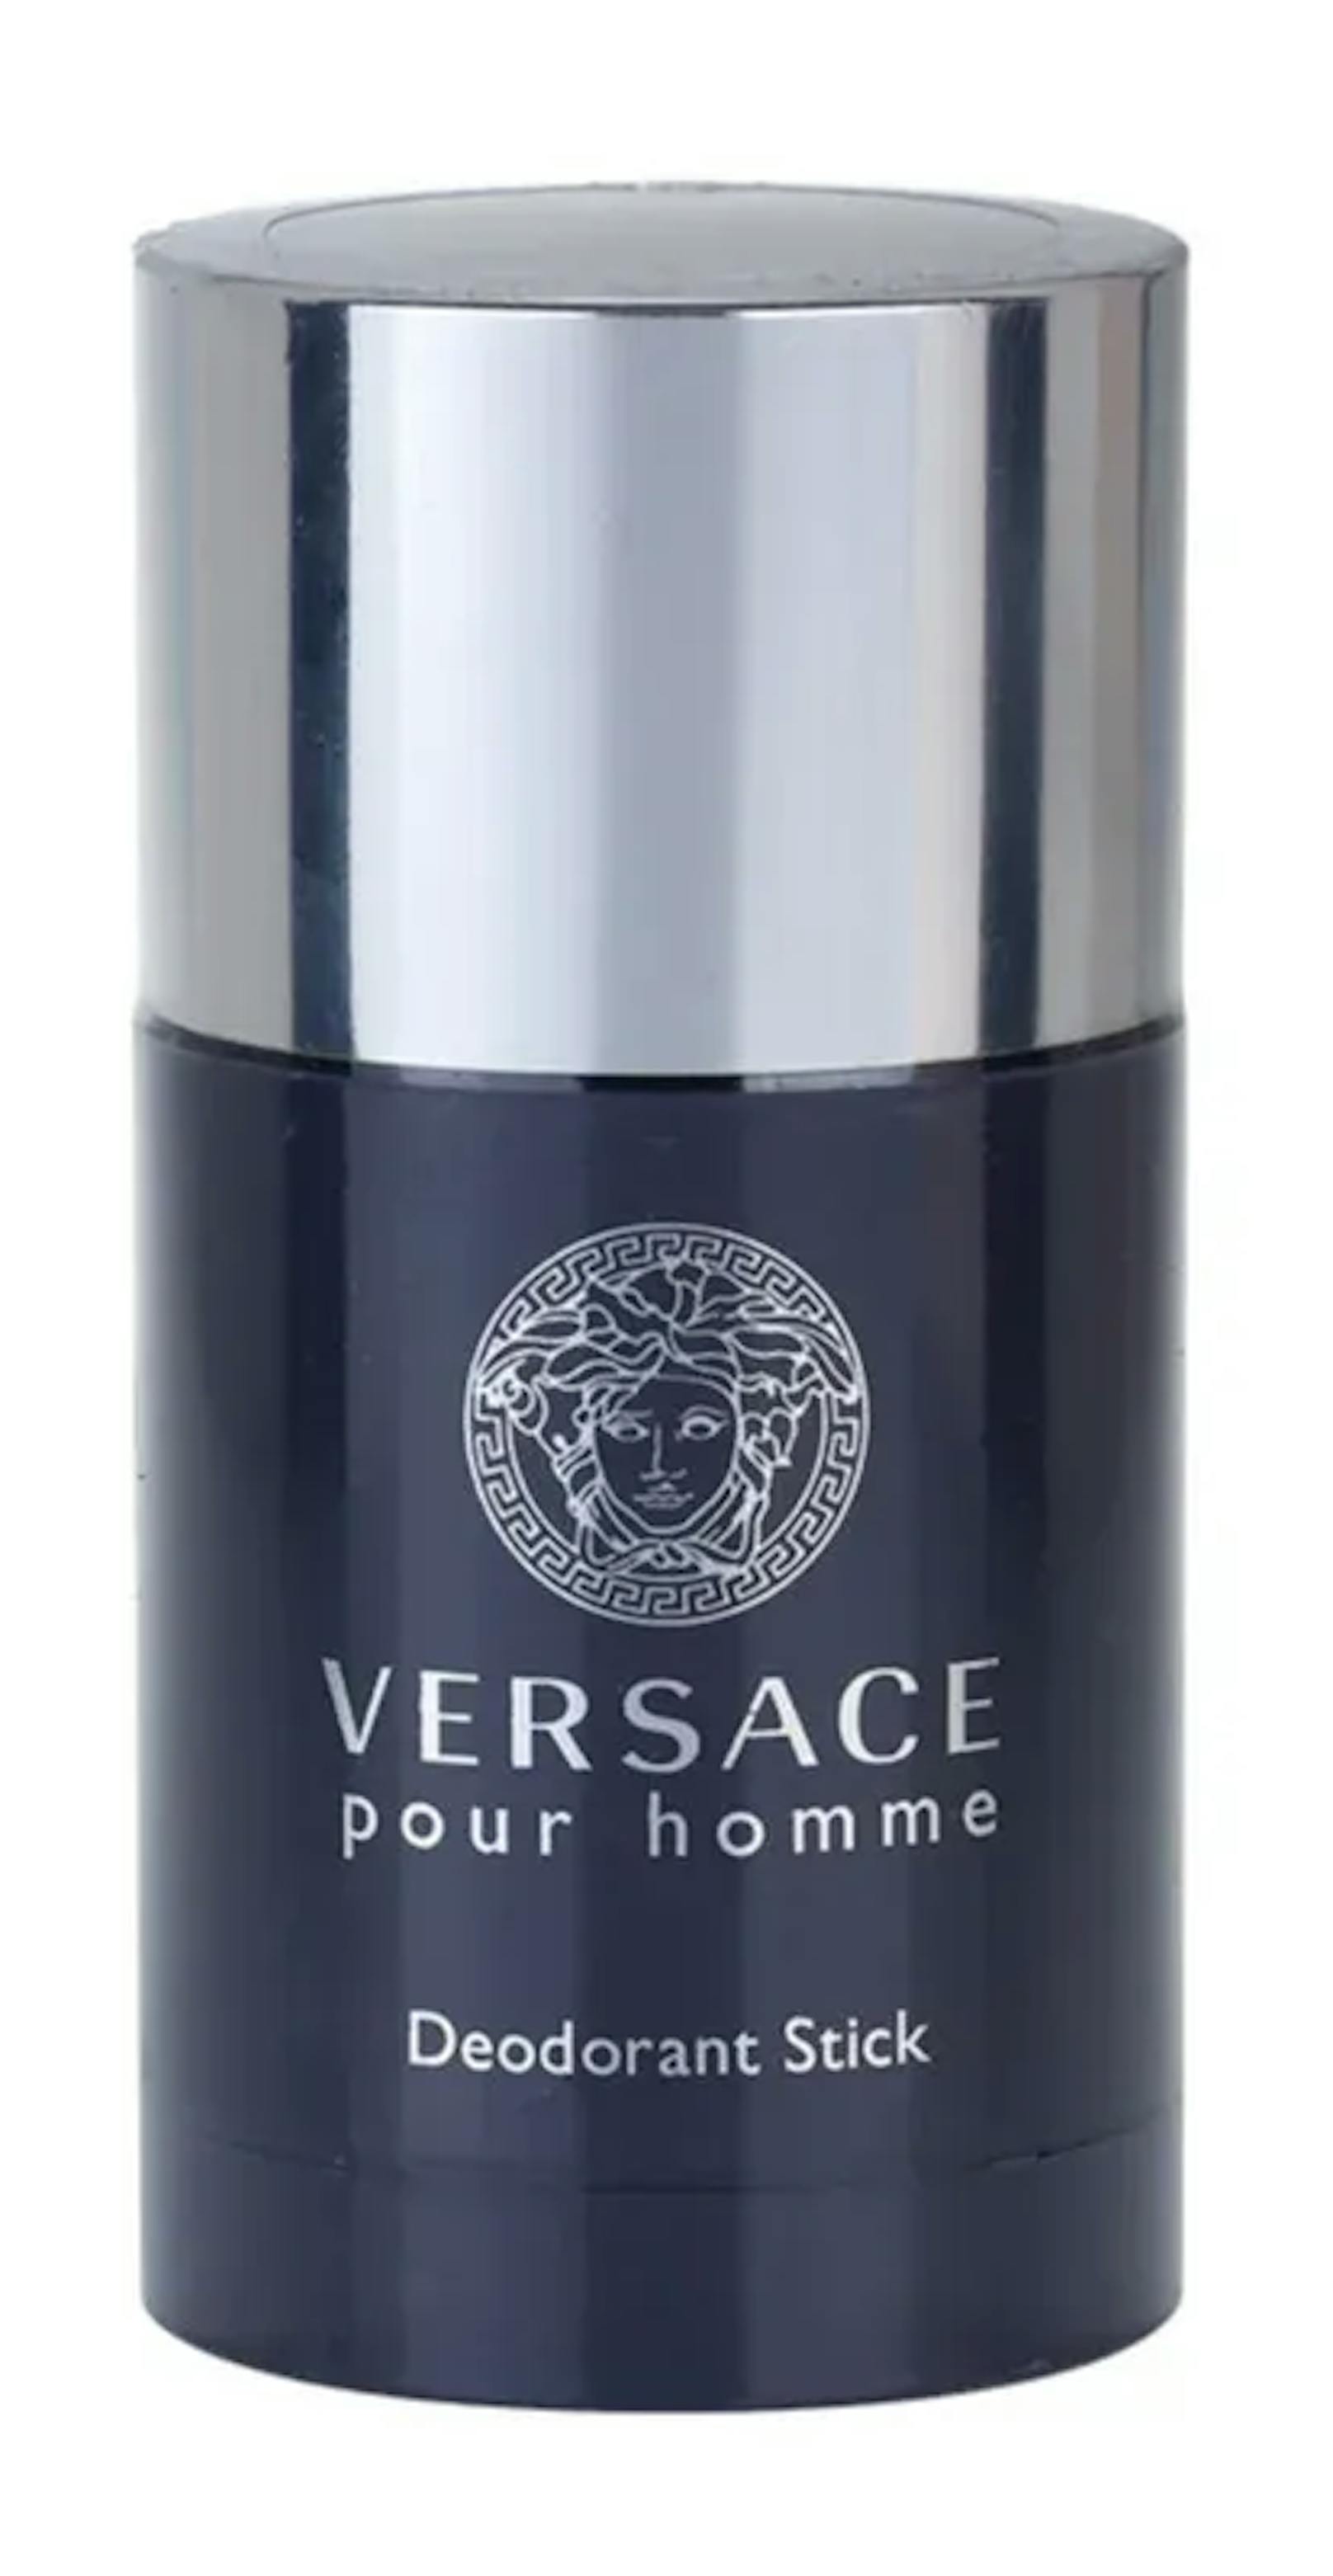 Diesen Deo-Stick von Versace solltest du immer bei dir haben, wenn du unterwegs angenehm sauber riechen möchtest. 